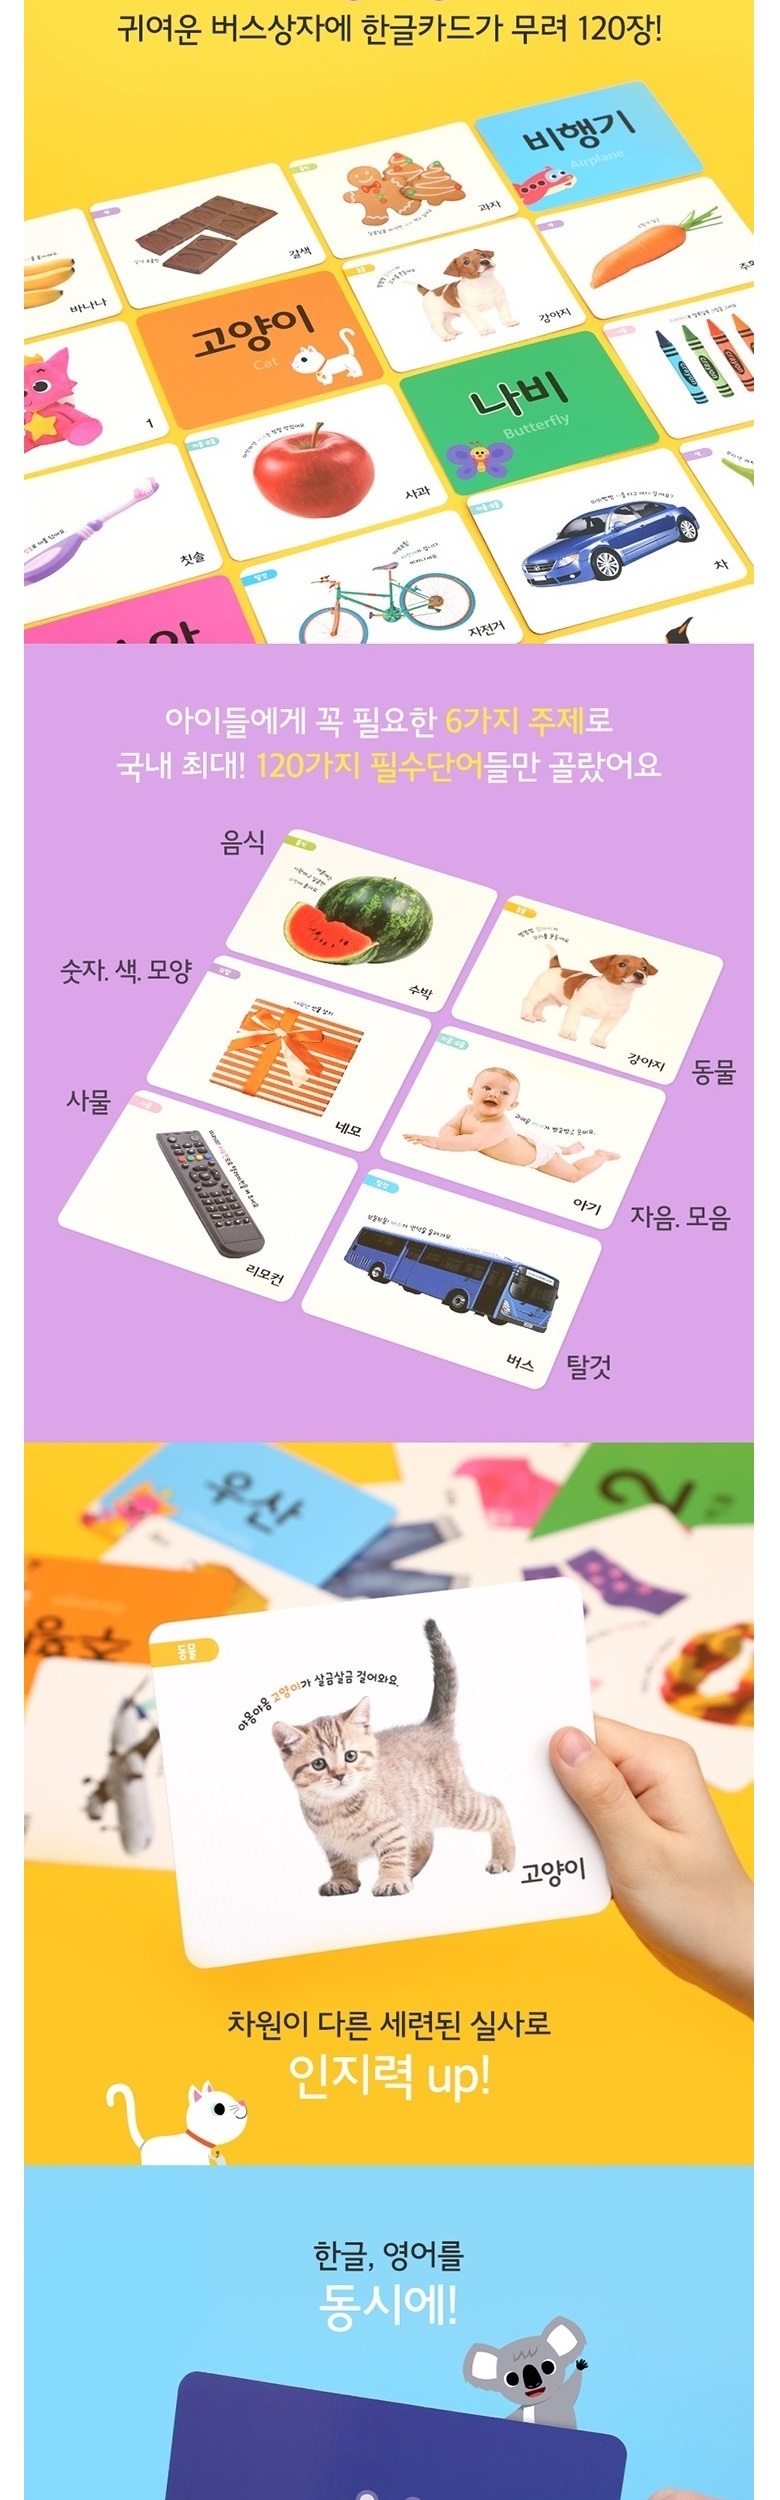 learningbuskorean_46990_5.jpg